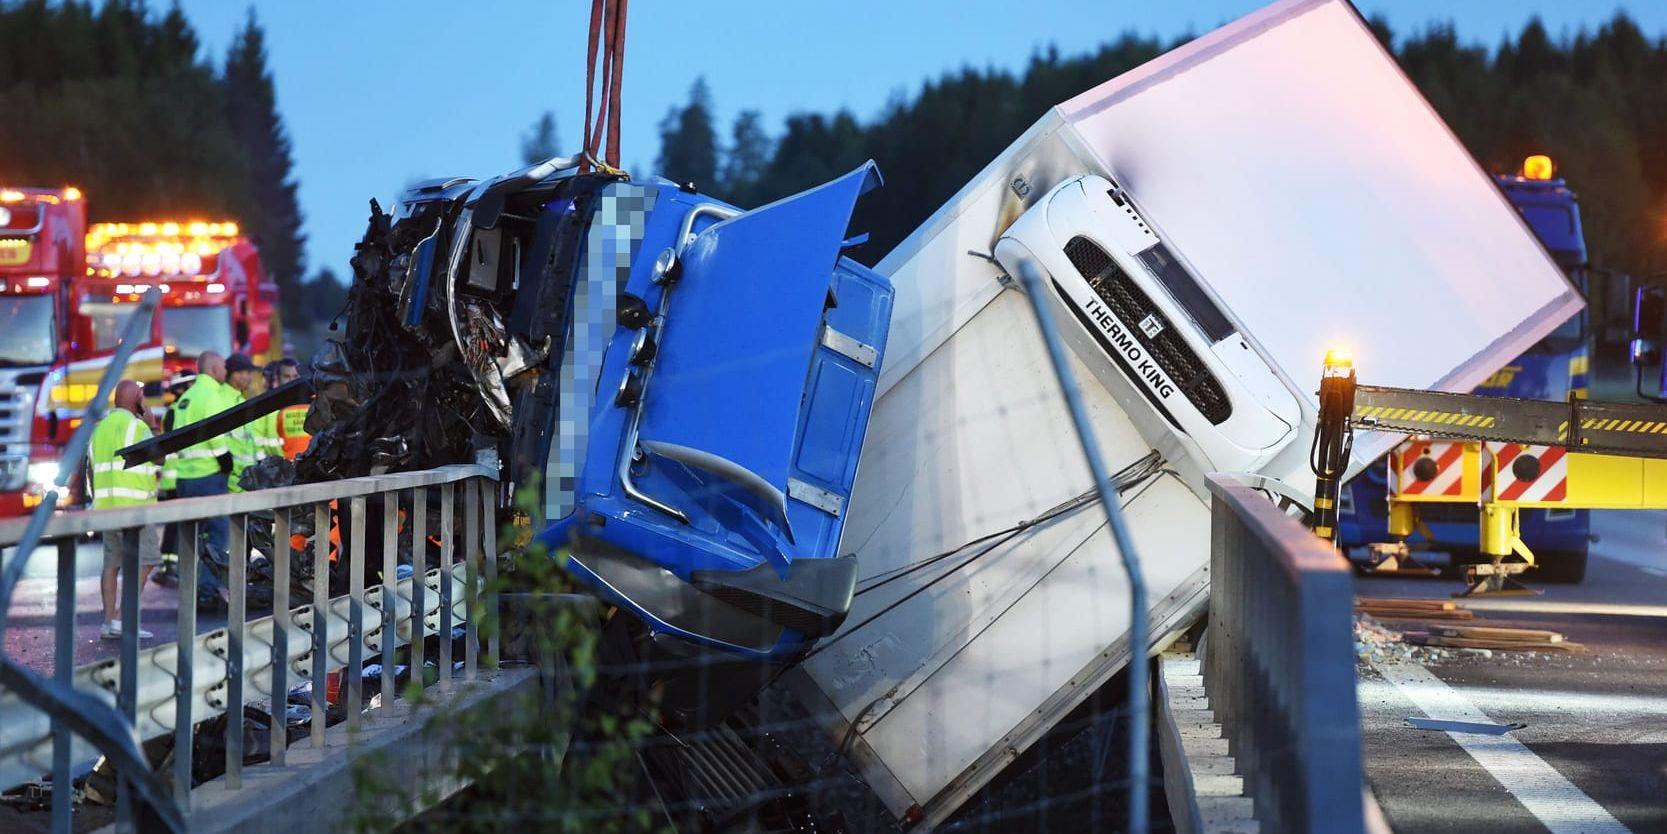 E4 är delvis avstängd i Södermanland till följd av den svåra olycka som inträffade – mellan en lastbil och ett husvagnsekipage – under natten till i fredags. Arkivbild.